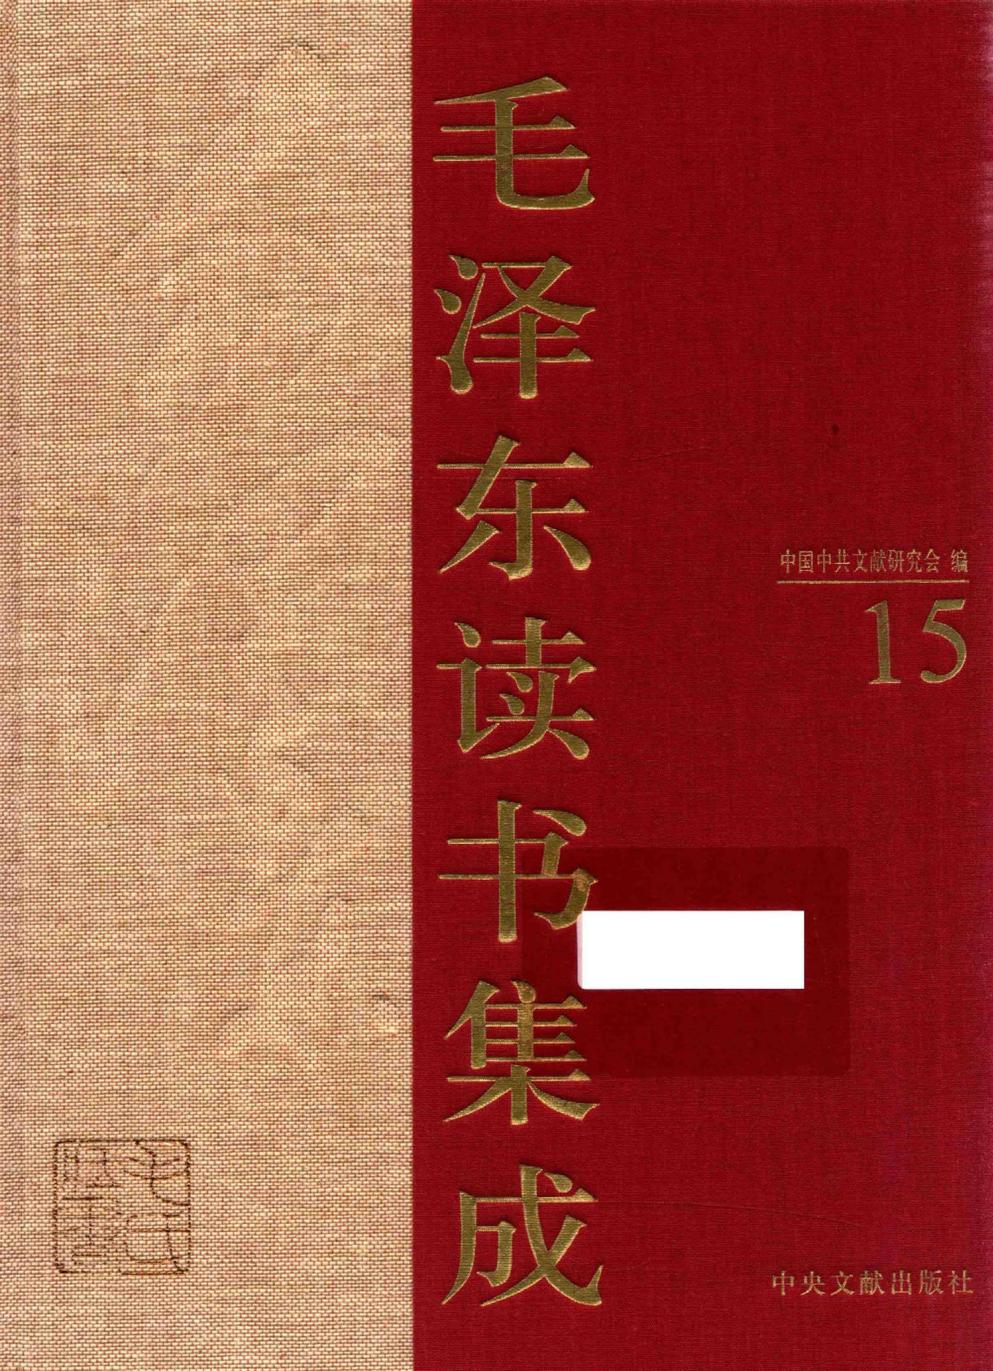 毛泽东读书集成（第15卷）-1